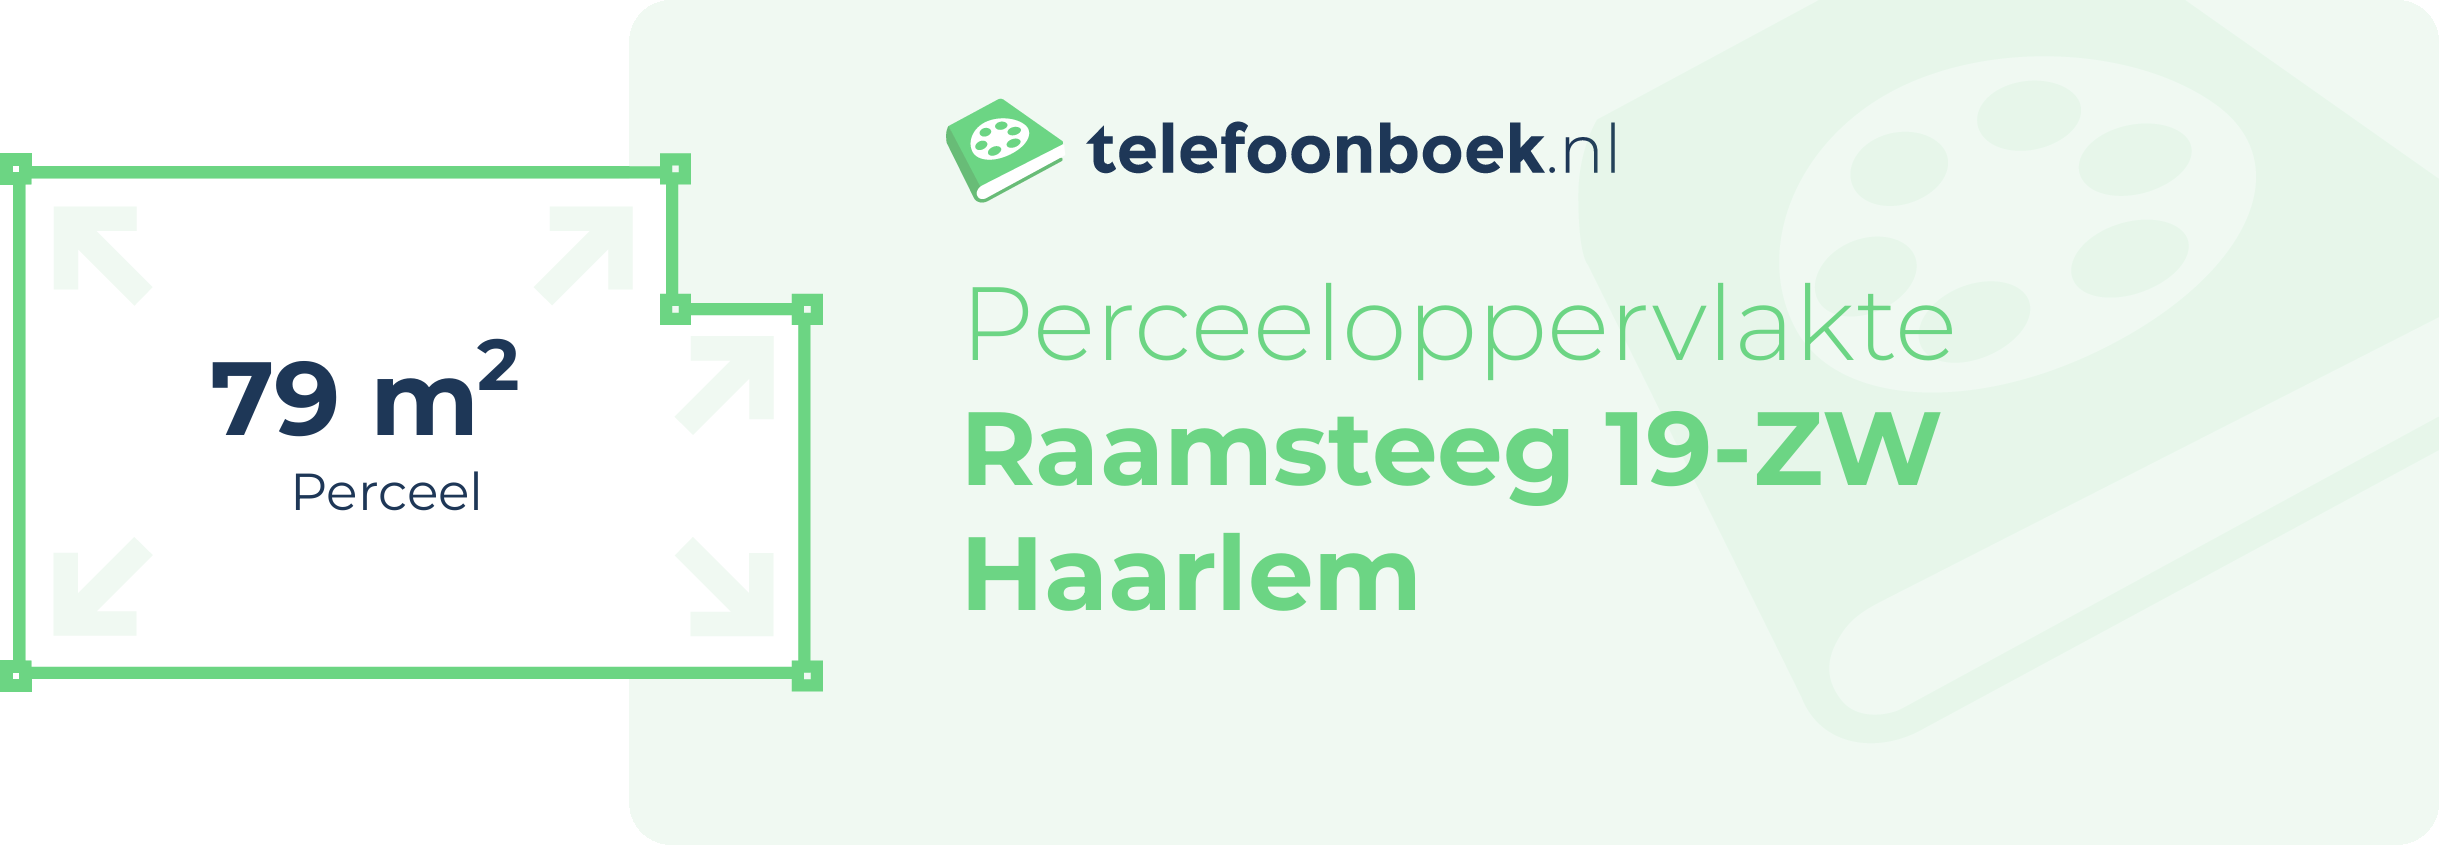 Perceeloppervlakte Raamsteeg 19-ZW Haarlem